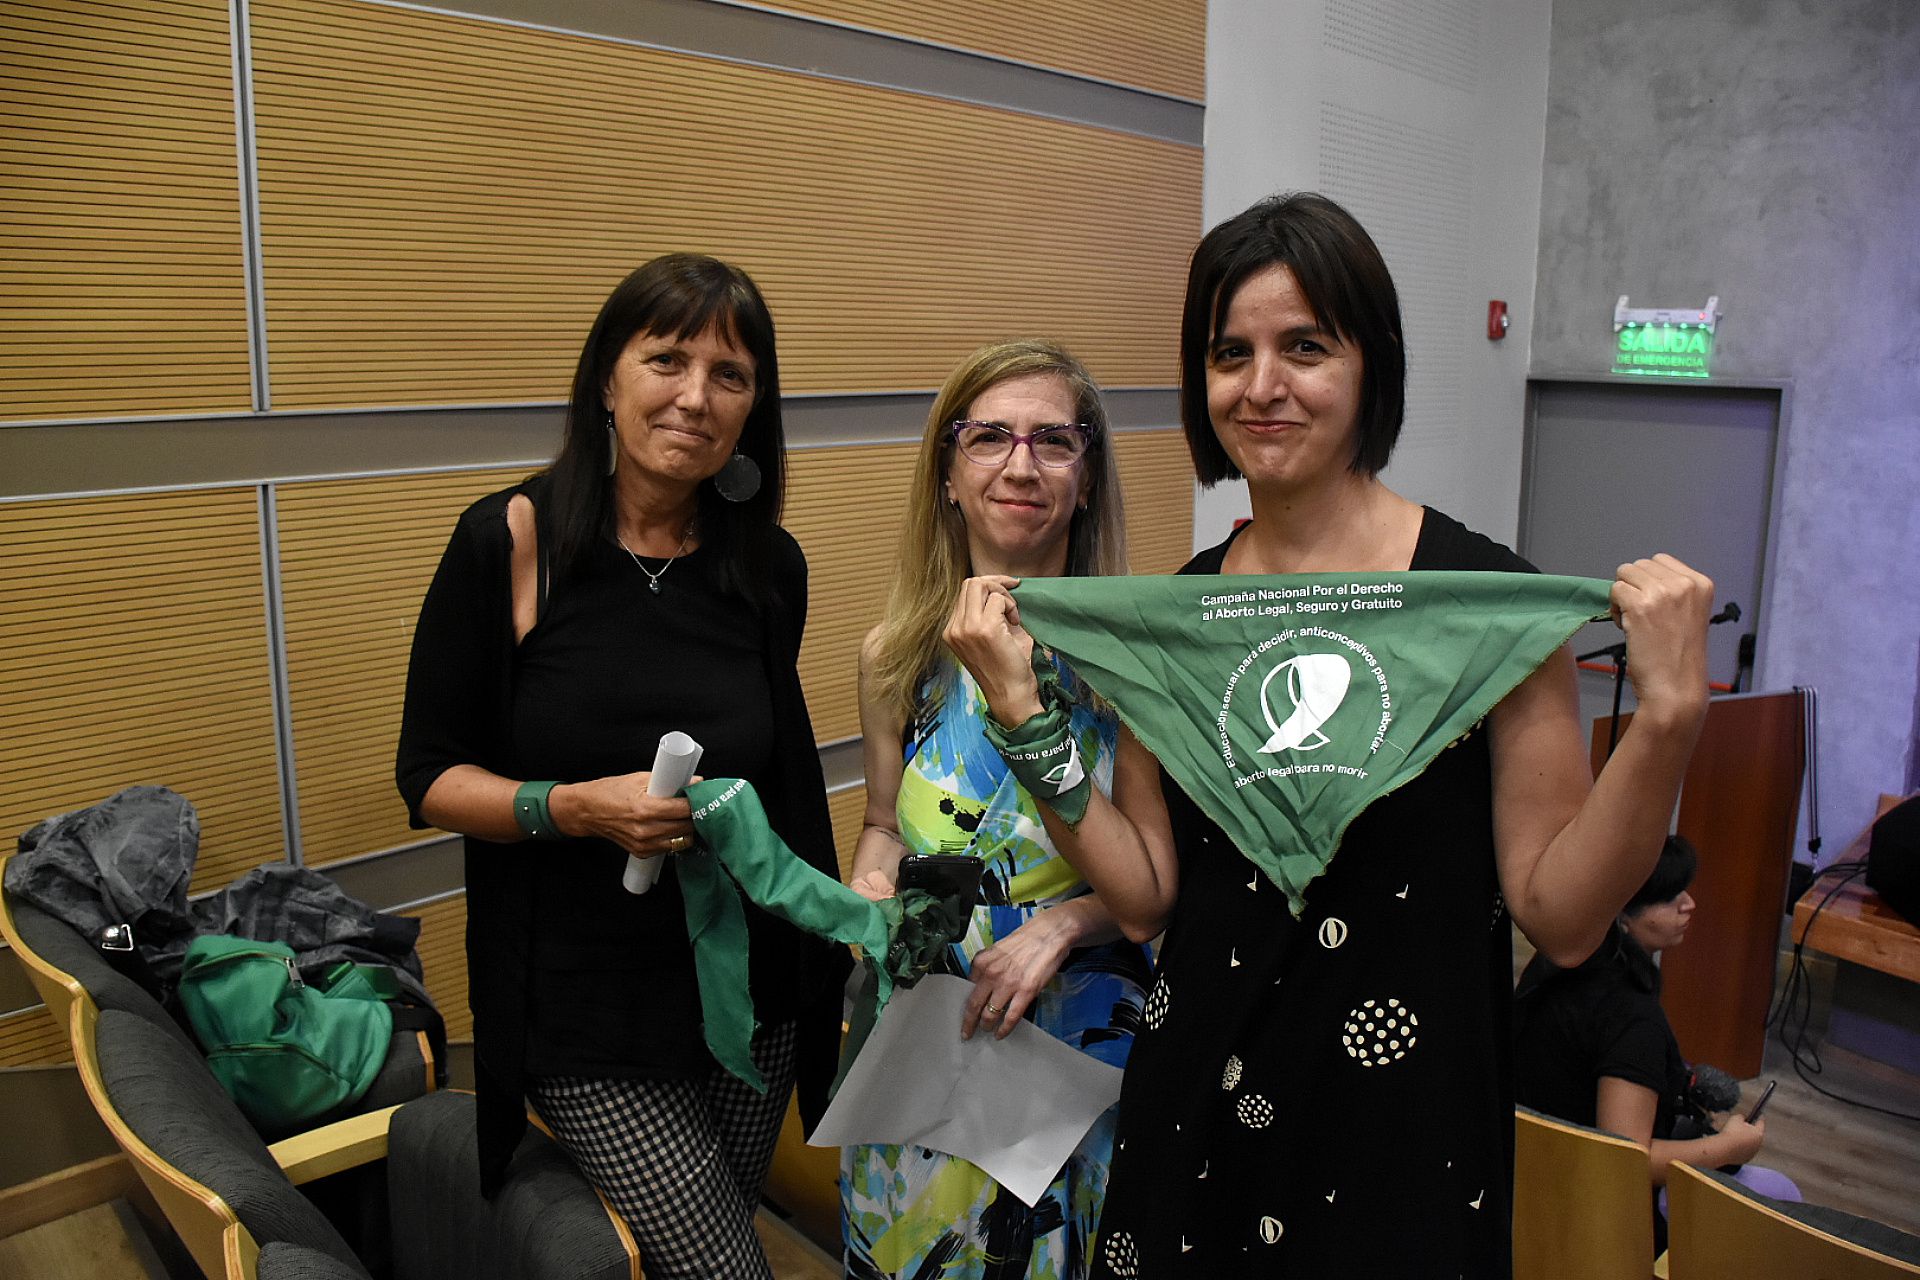 La escritora Claudia Piñeiro, junto a la periodista Ingrid Beck y a Ana Correa, autora de "Somos Belén" en la conferencia de prensa (Nicolás Stulberg)